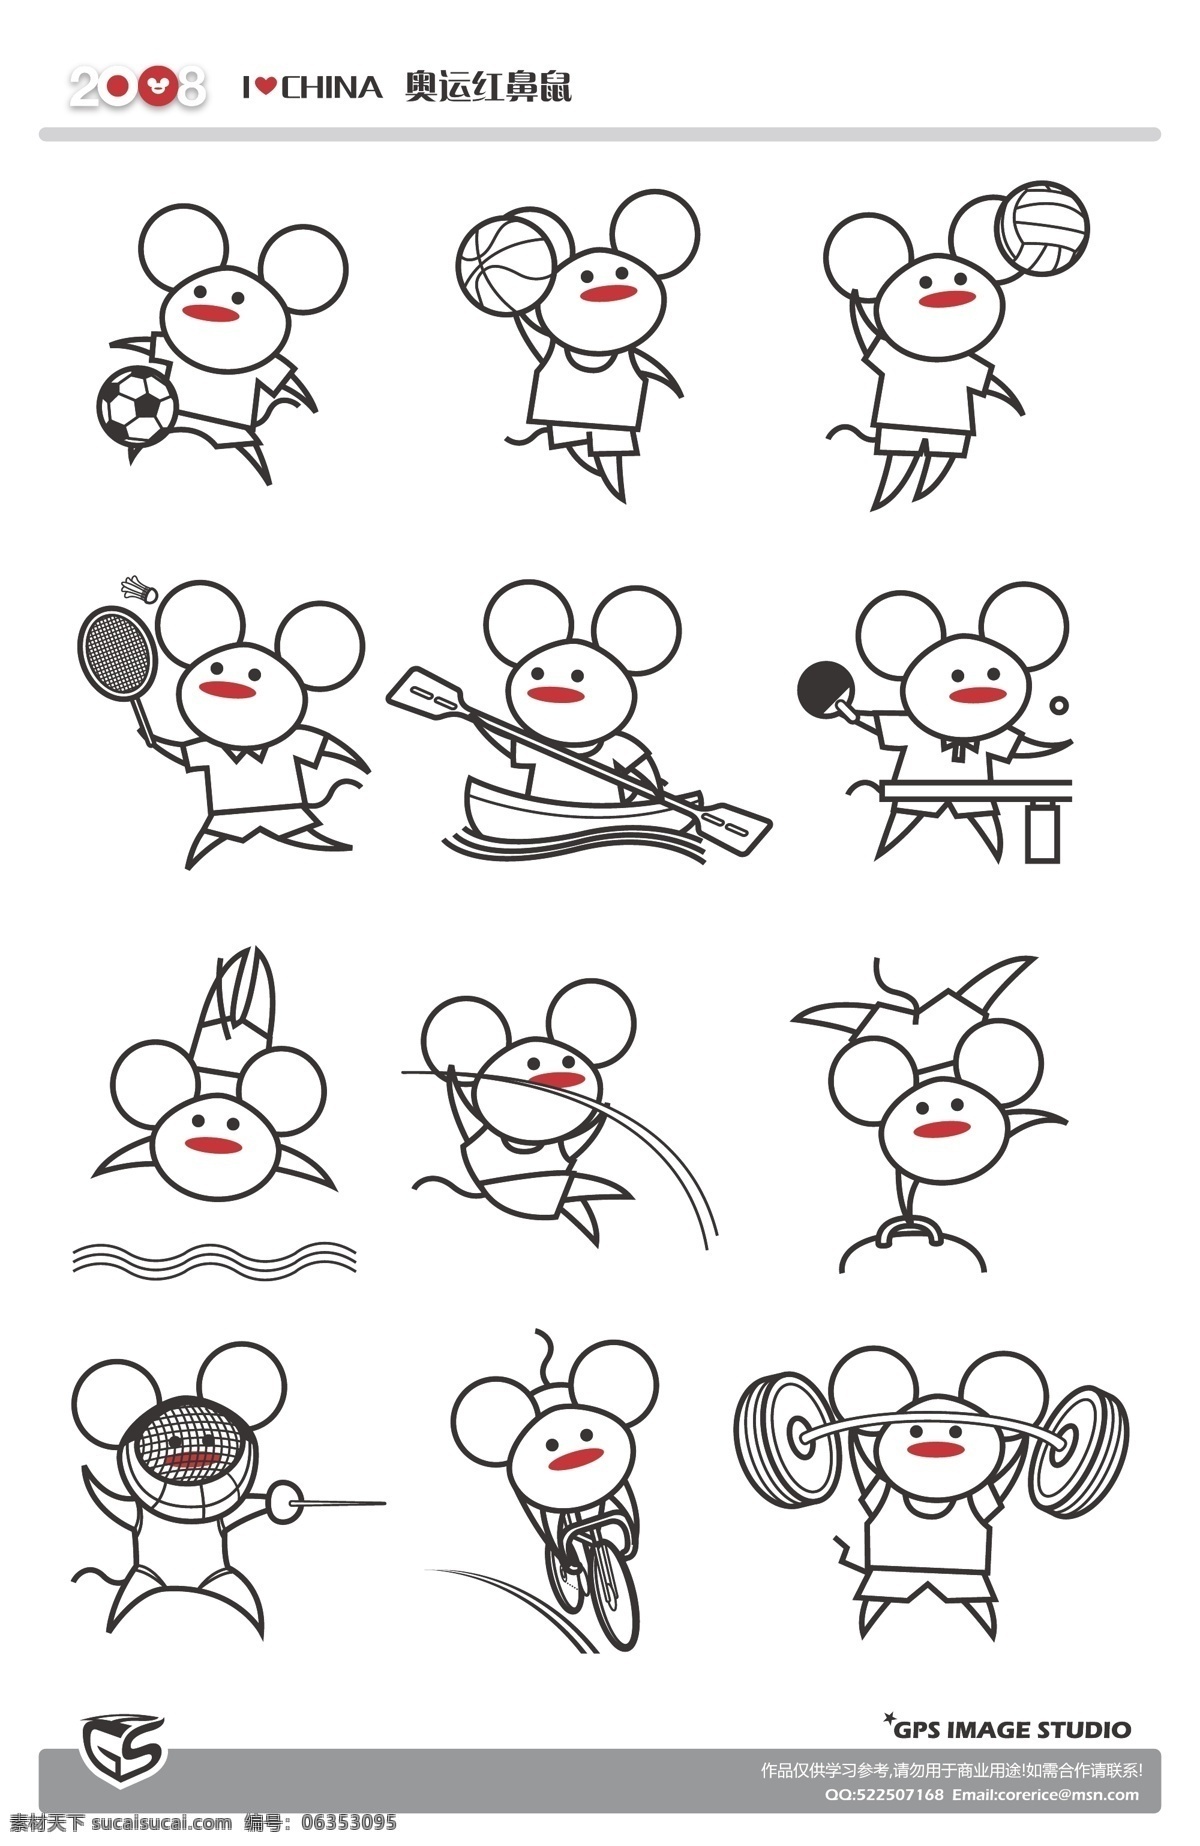 2008 奥运 矢量图 红 鼻 鼠 运动矢量素材 奥运矢量图 老鼠矢量图 节日素材 其他节日